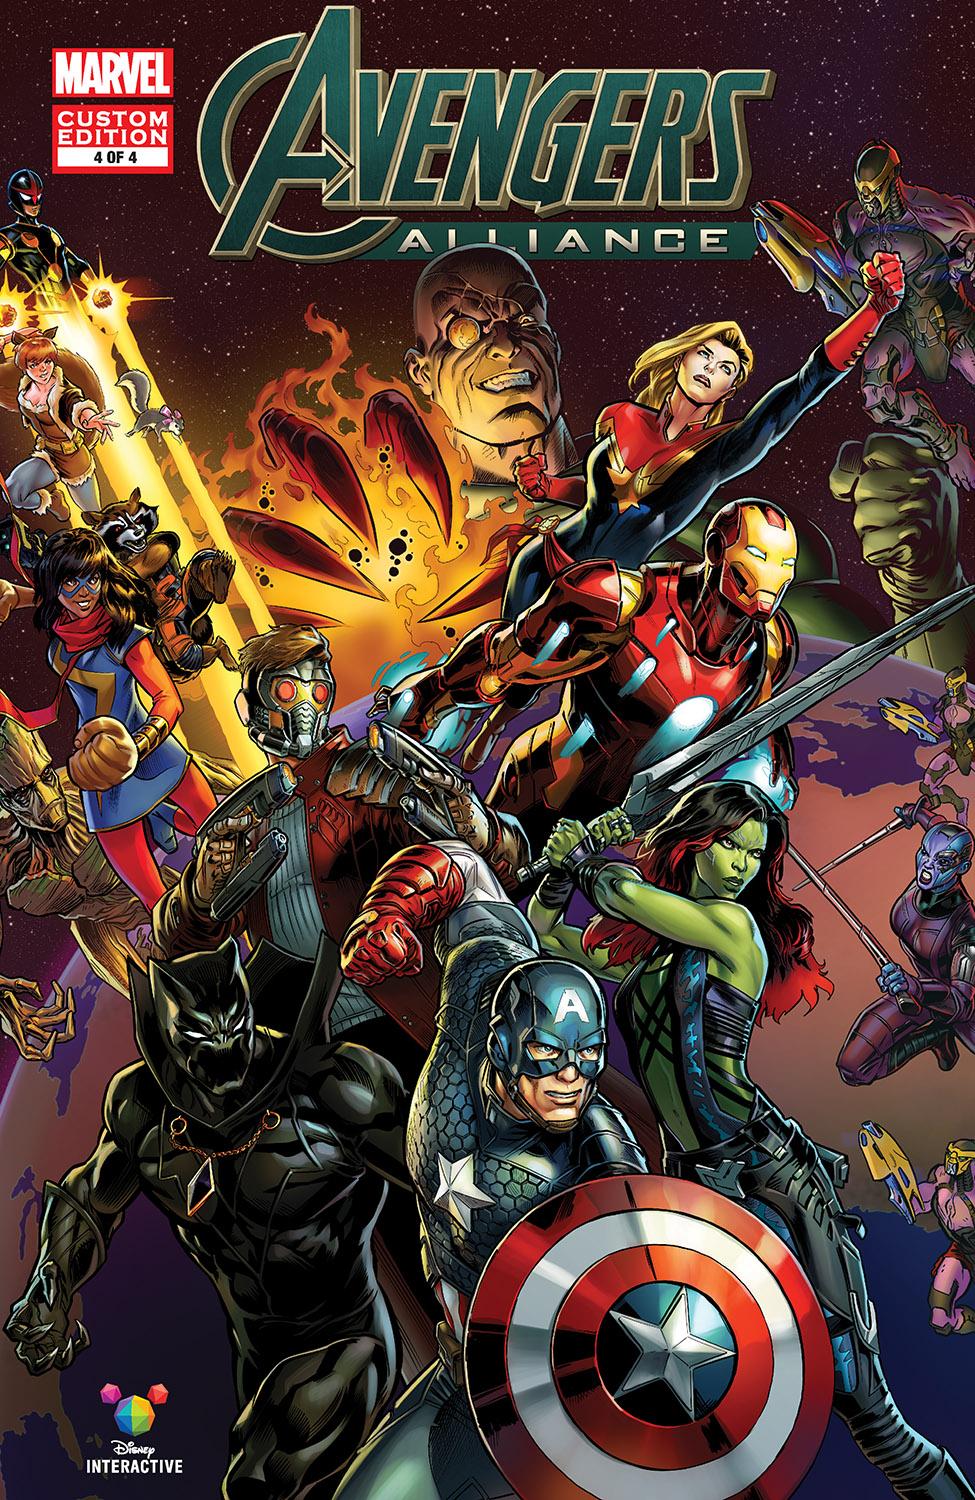 Marvel: Avengers Alliance Vol. 1 #4